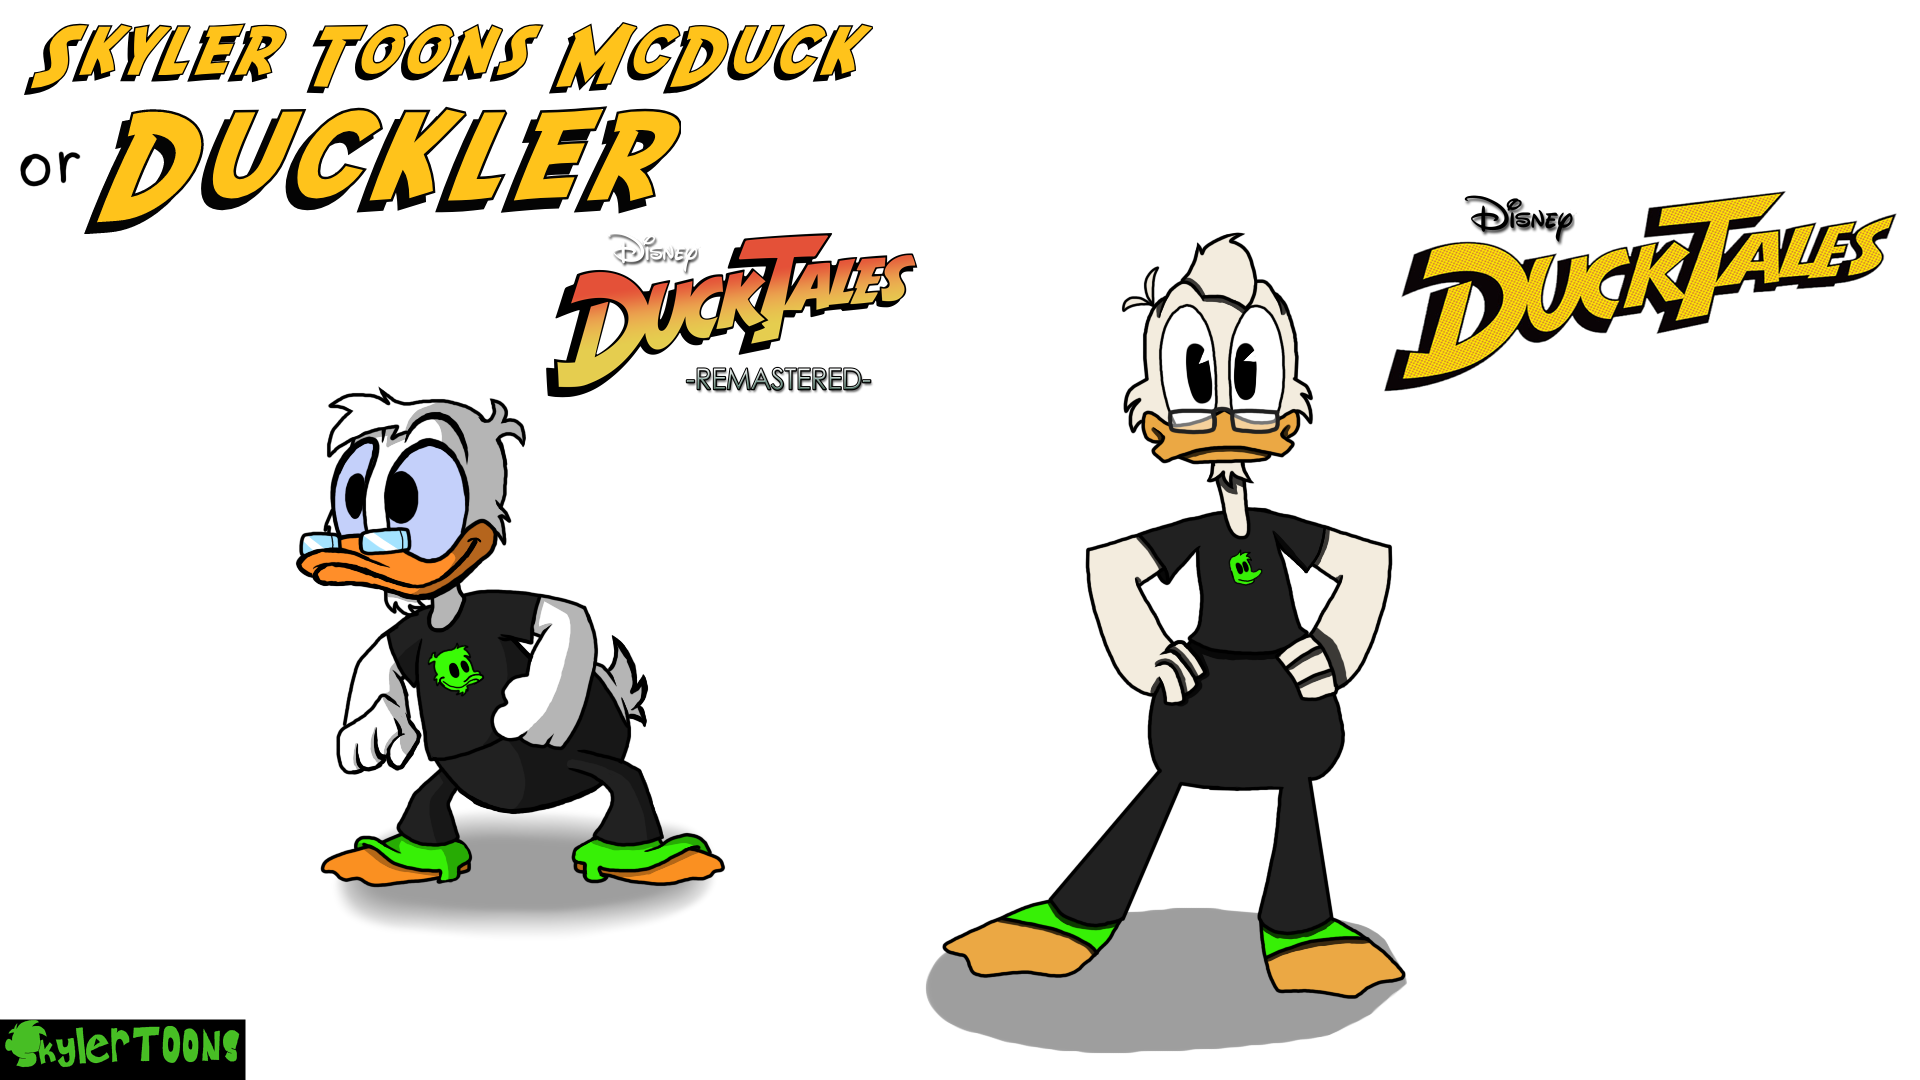 SkylerToons in DuckTales style by skylertoons on DeviantArt